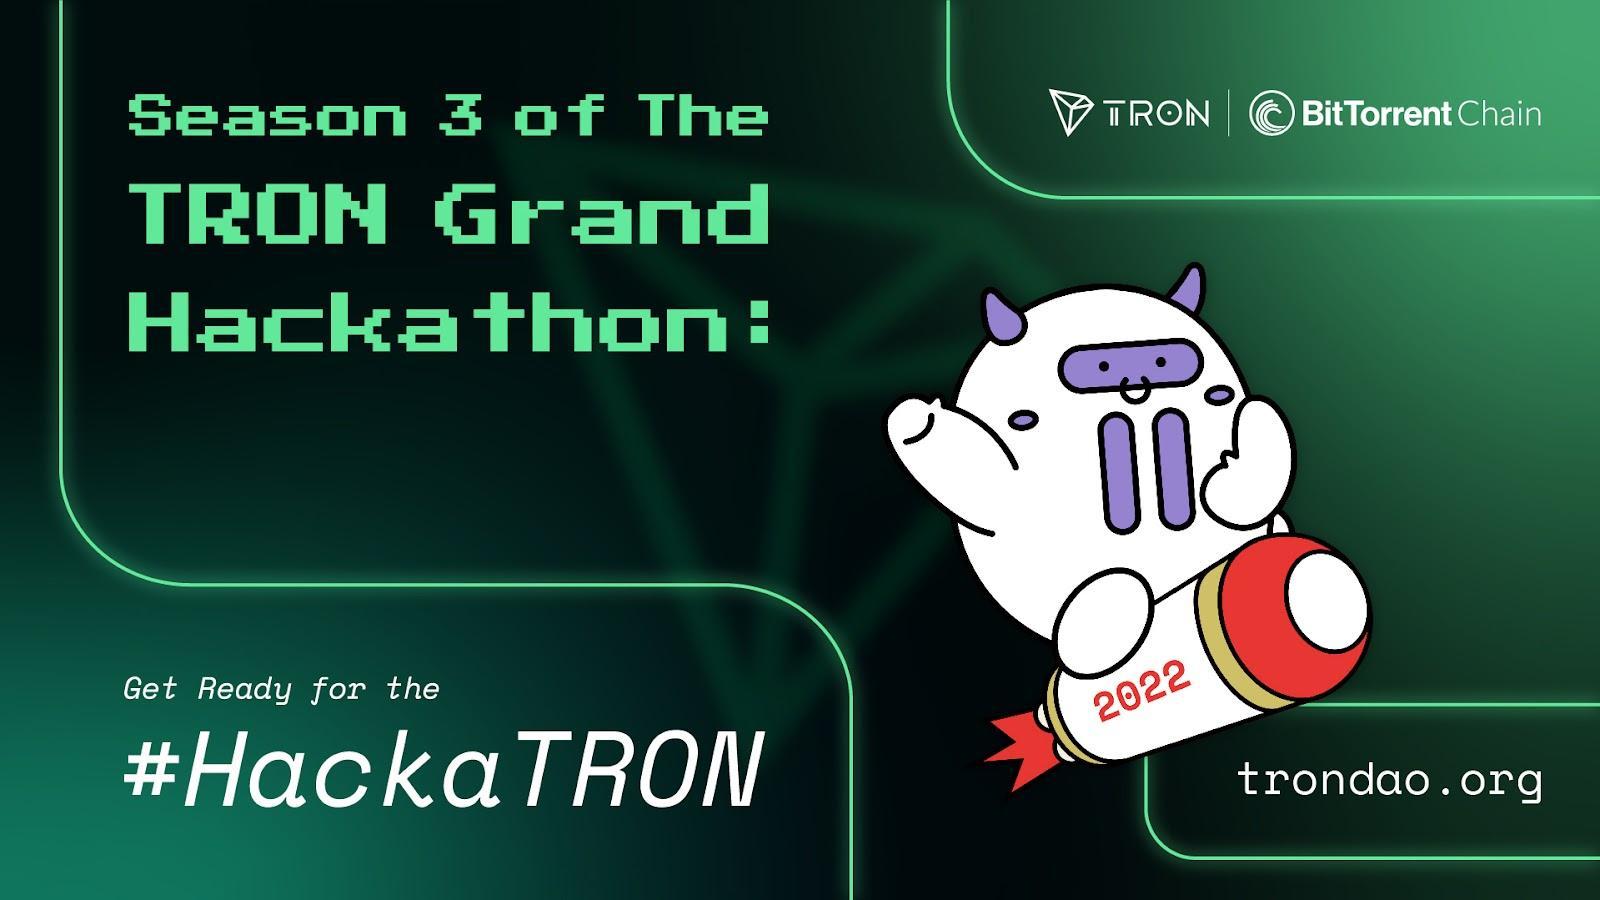 Tron Hackathon Season 3